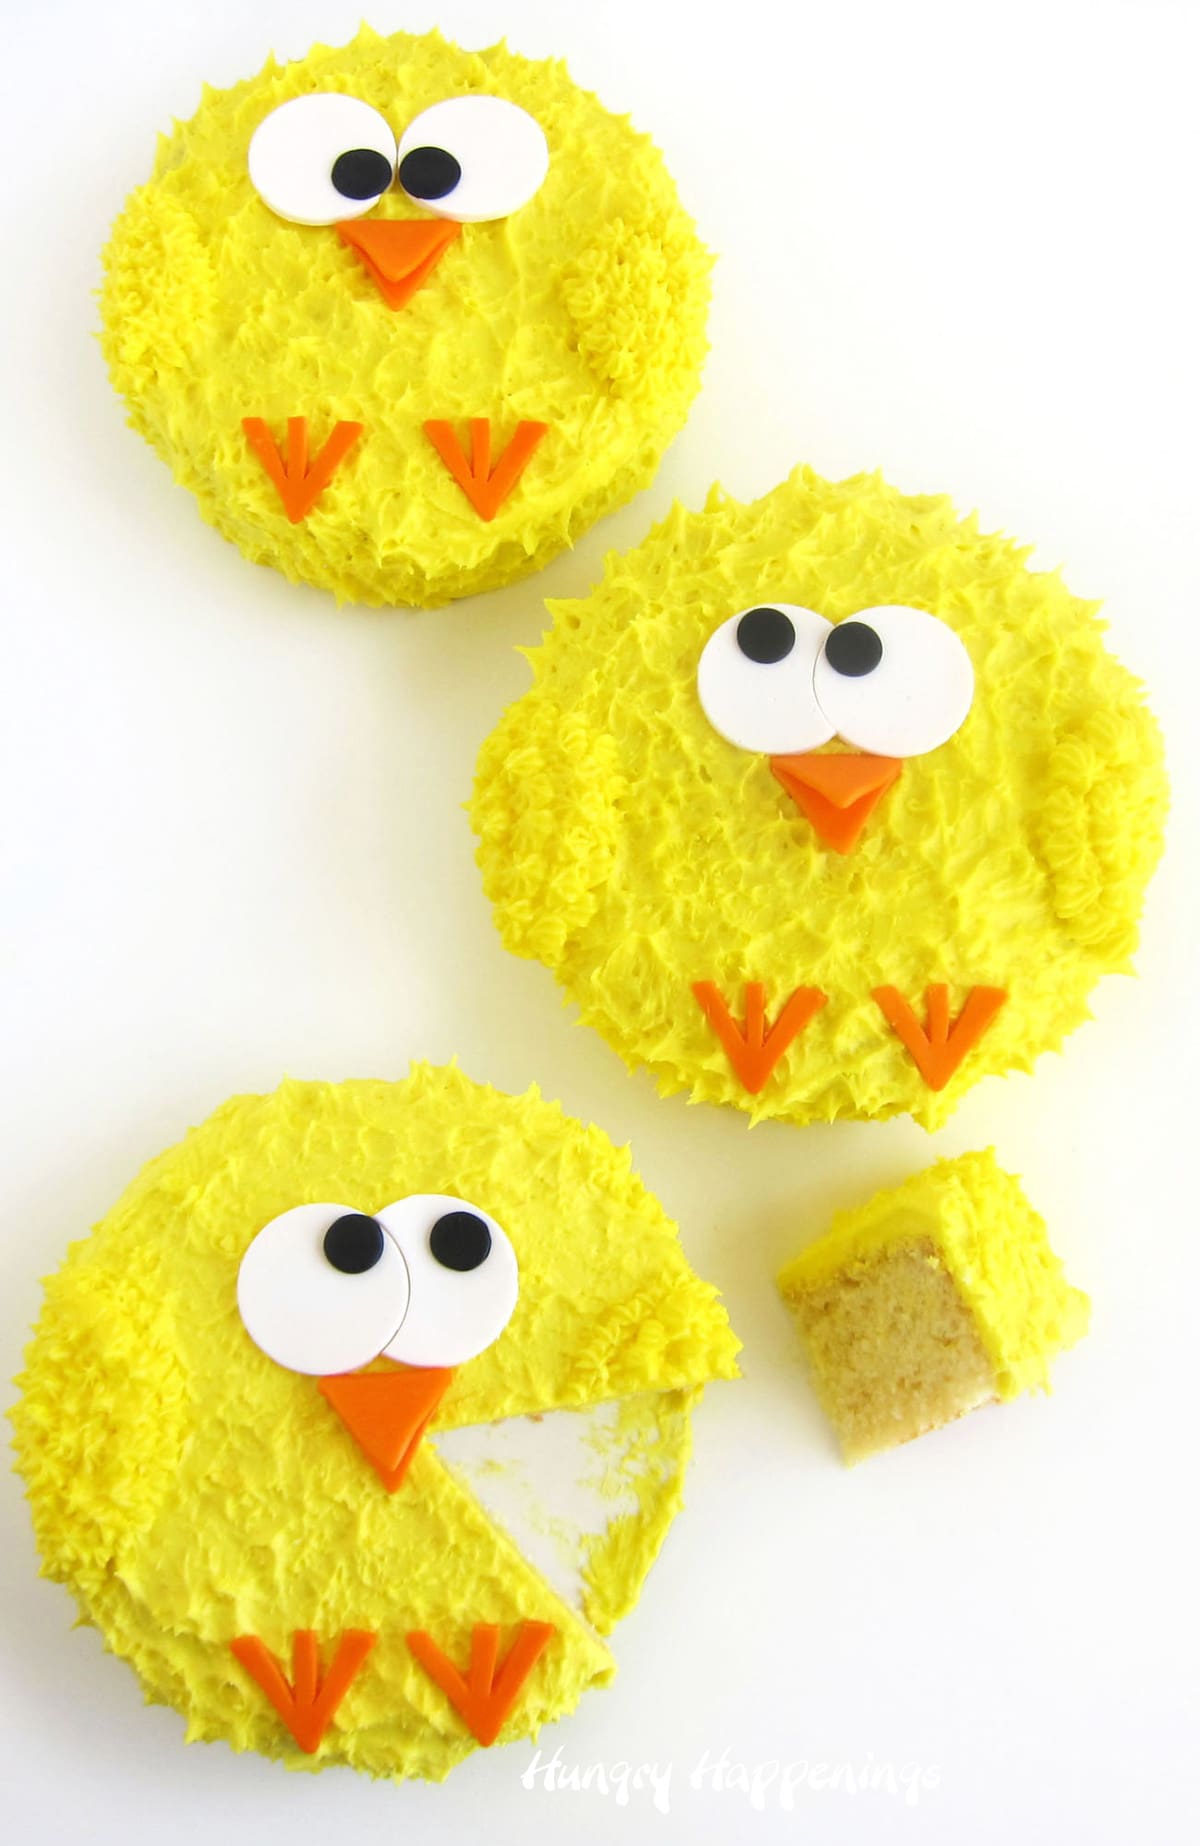 Easter cakes - lemon cake baby chicks